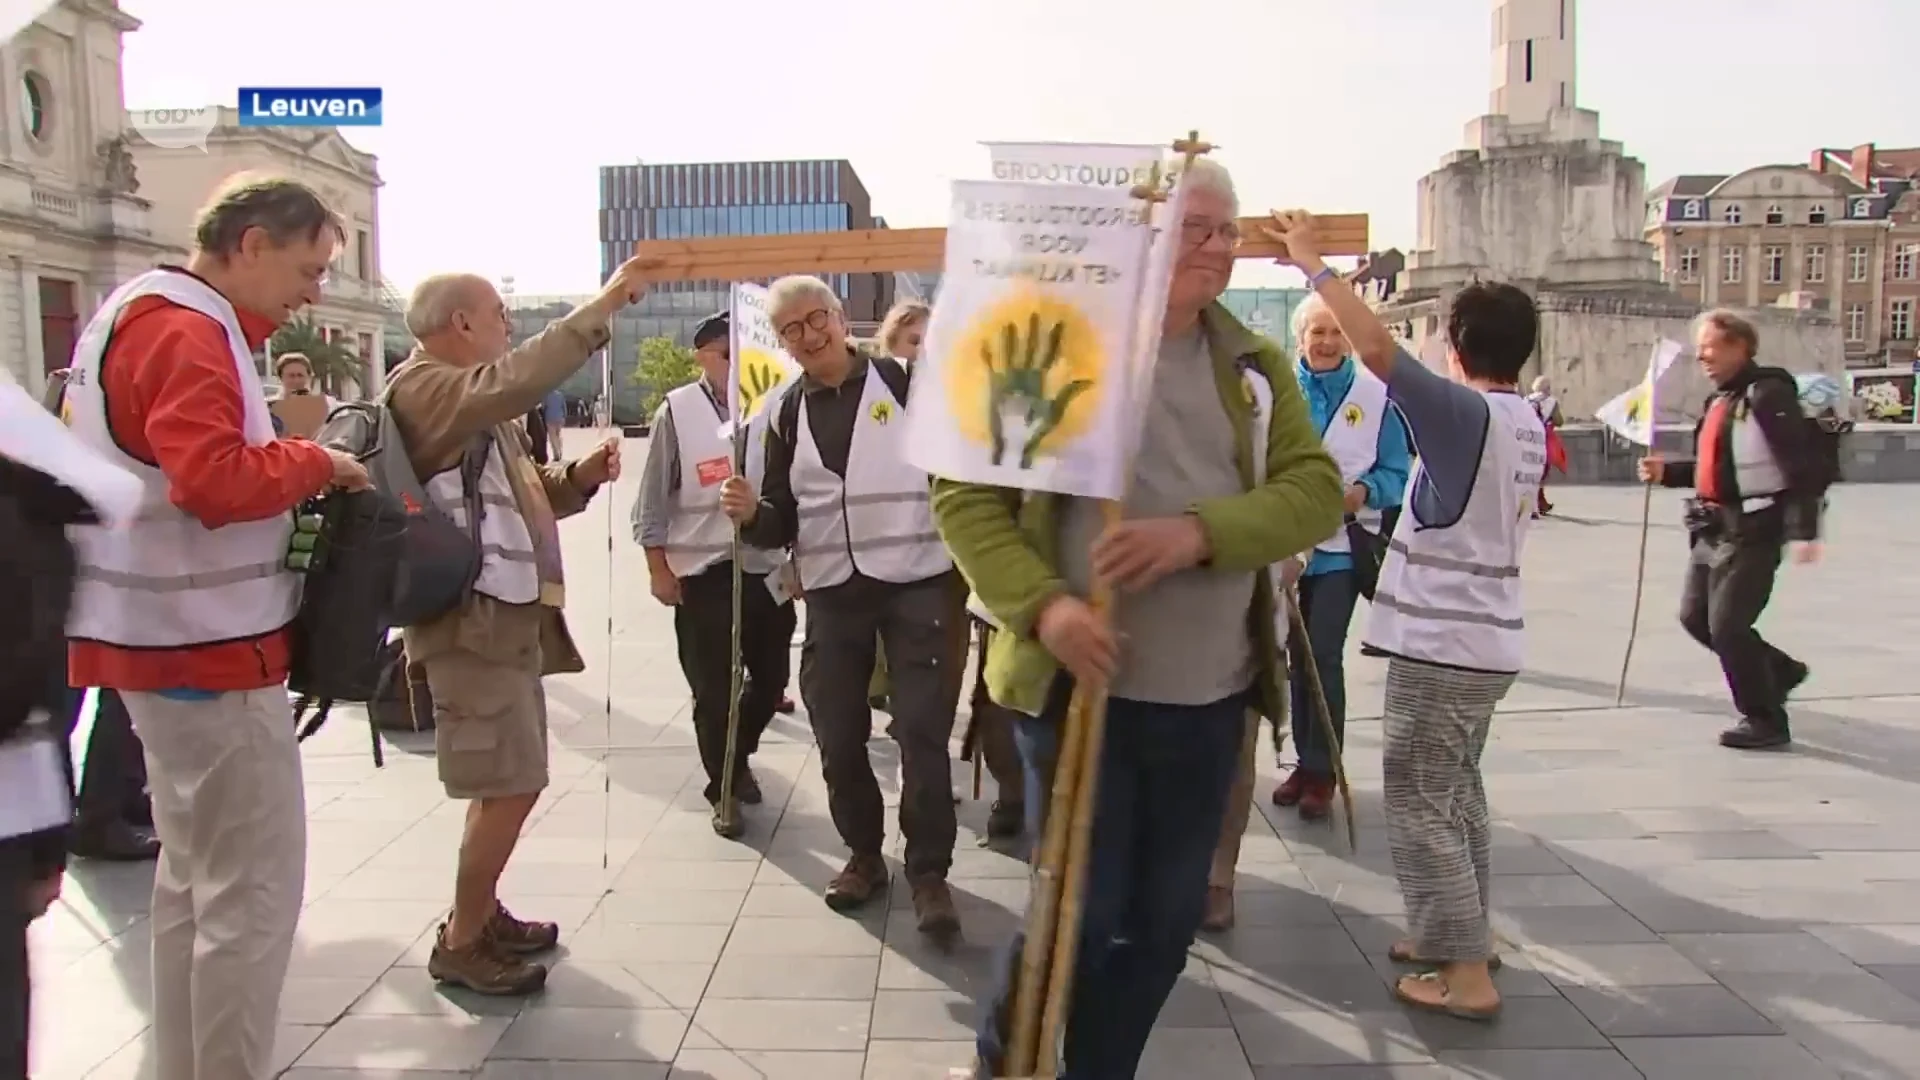 Grootouders voor het klimaat voeren actie in Leuven: "Leg de lat hoger"